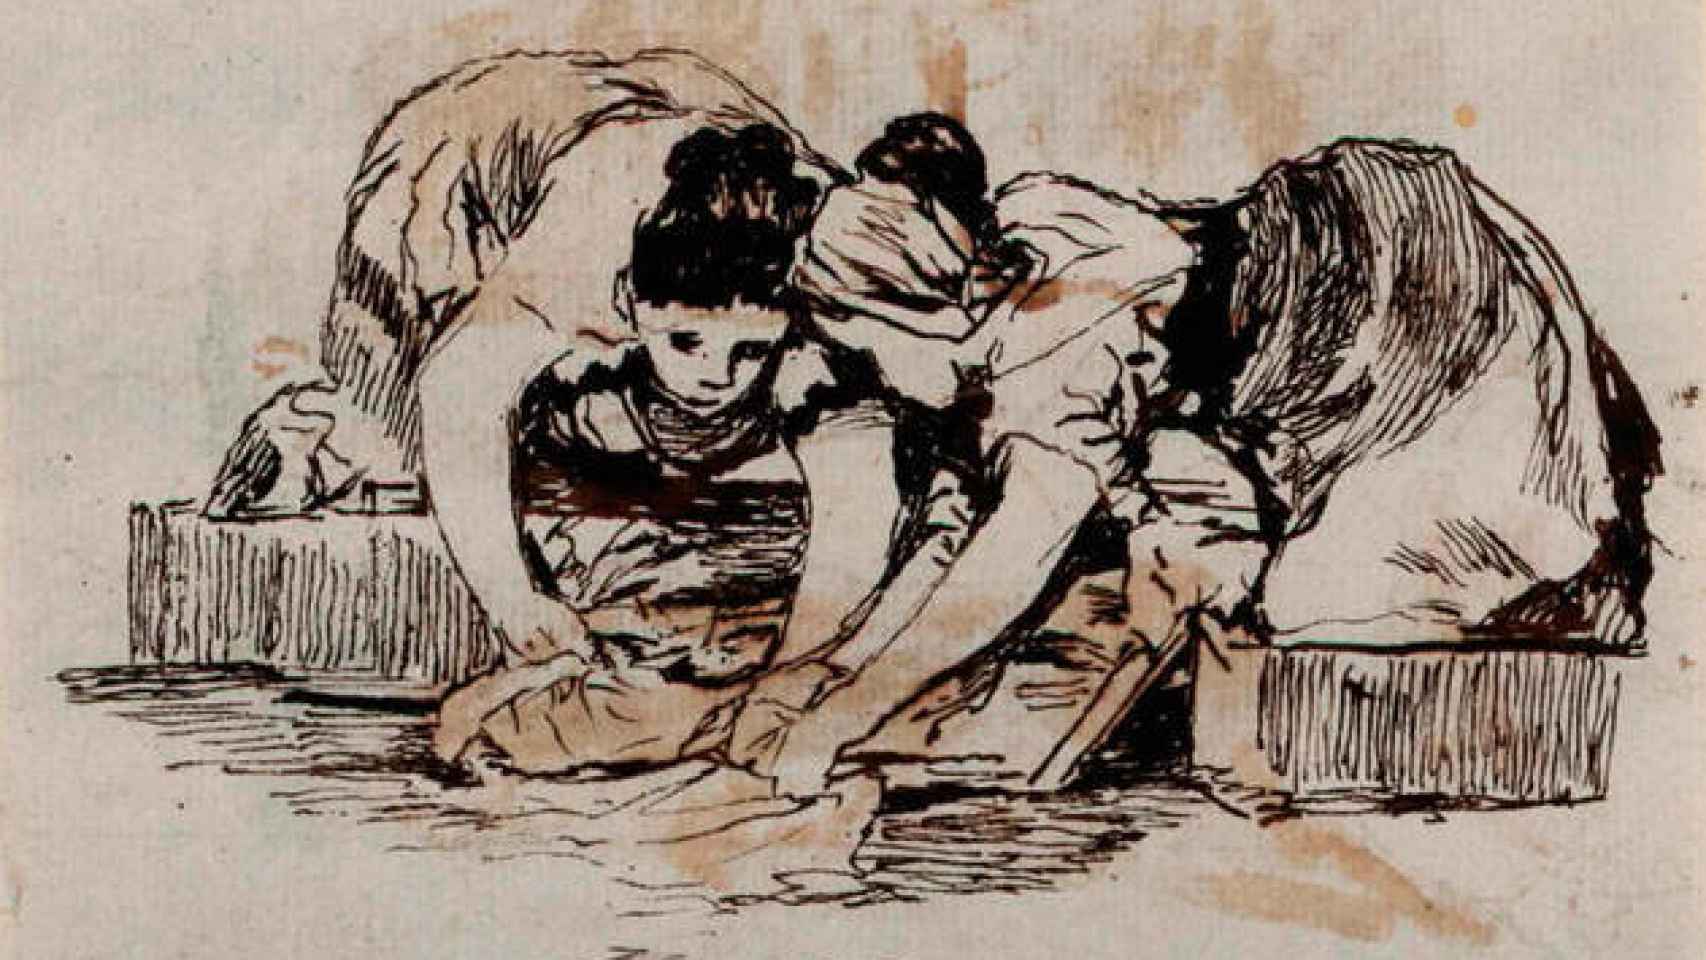 'Mujeres lavando' es uno de los dibujos pintados a duo entre Weiss y Goya.